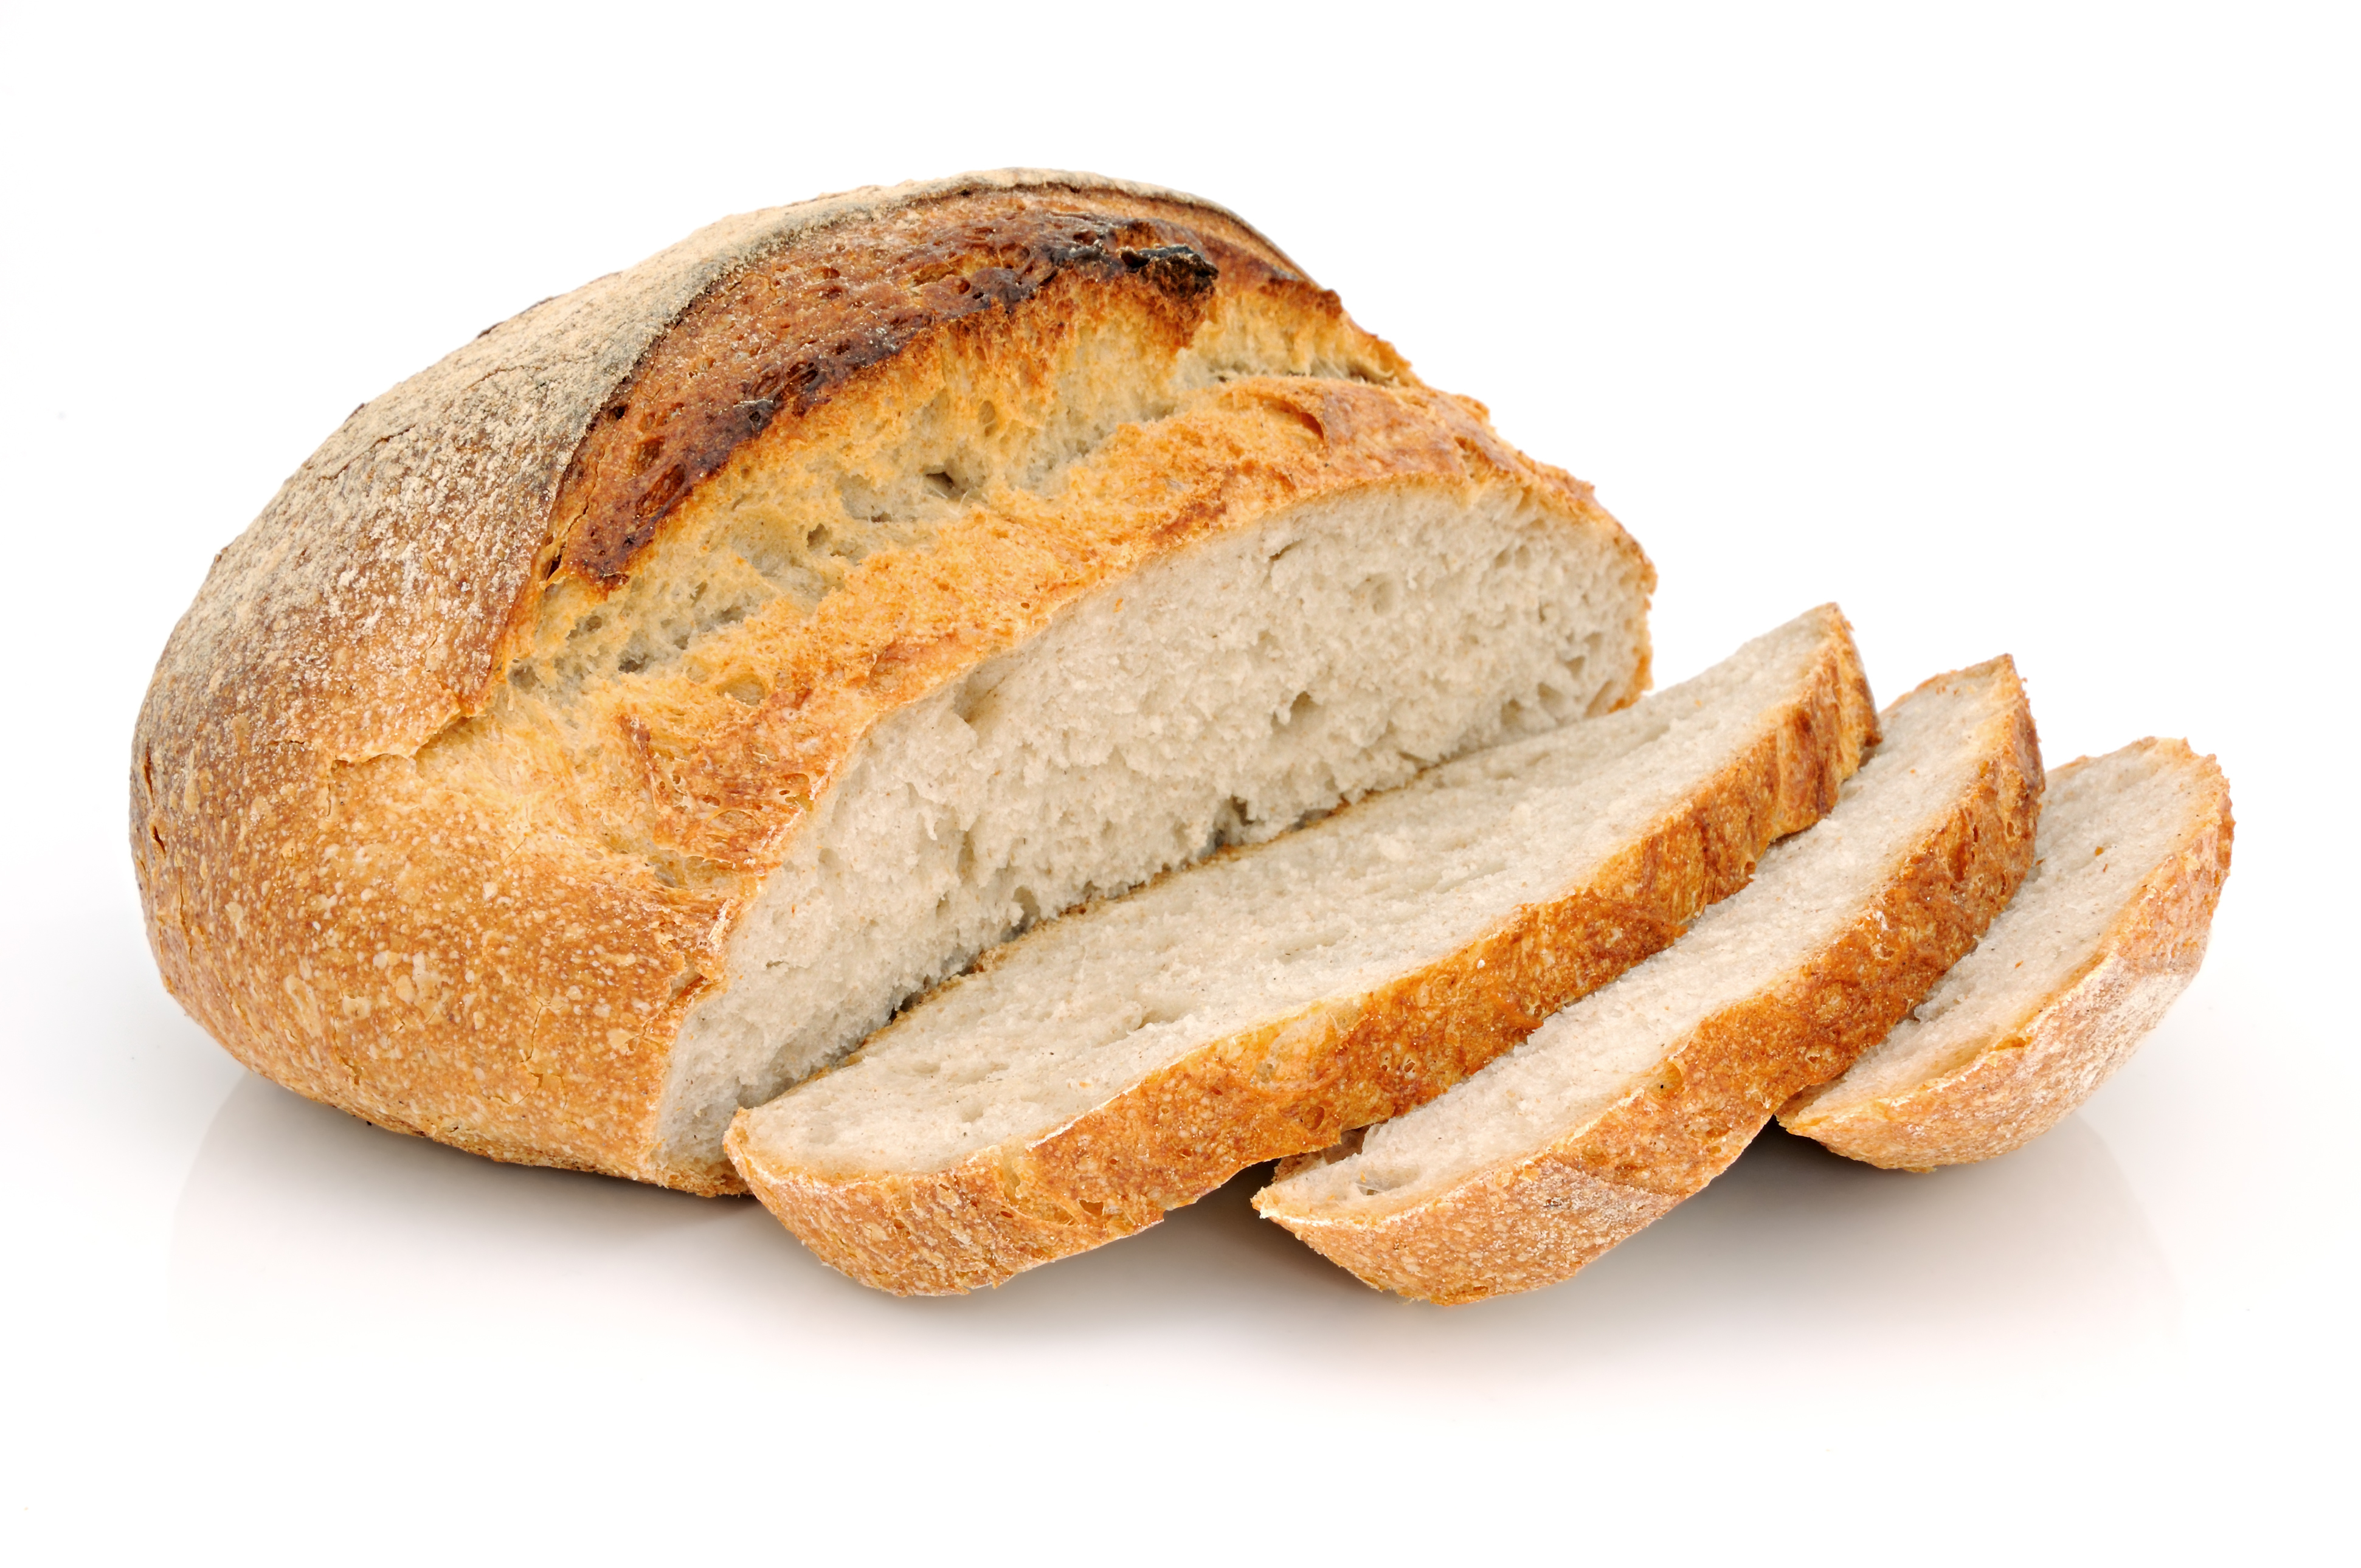 Κοινές δράσεις ΕΦΕΤ και αρτοποιών για μείωση του αλατιού στο ψωμί